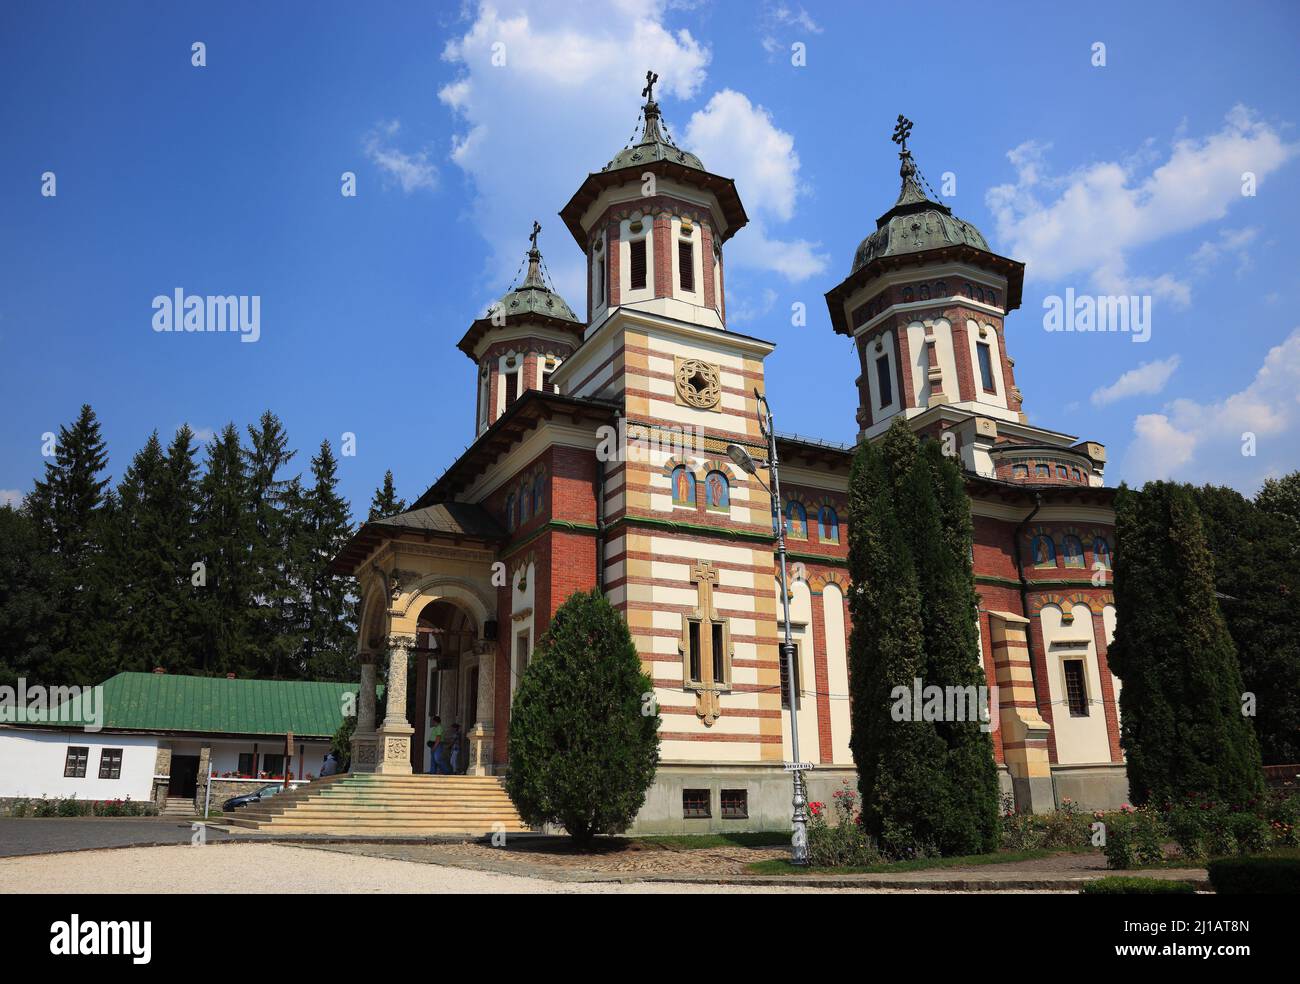 Kloster von Sinaia, Große Walachei, Rumänien  /  Monastery of Sinaia, Great Wallachia, Romania (Aufnahmedatum kann abweichen) Stock Photo